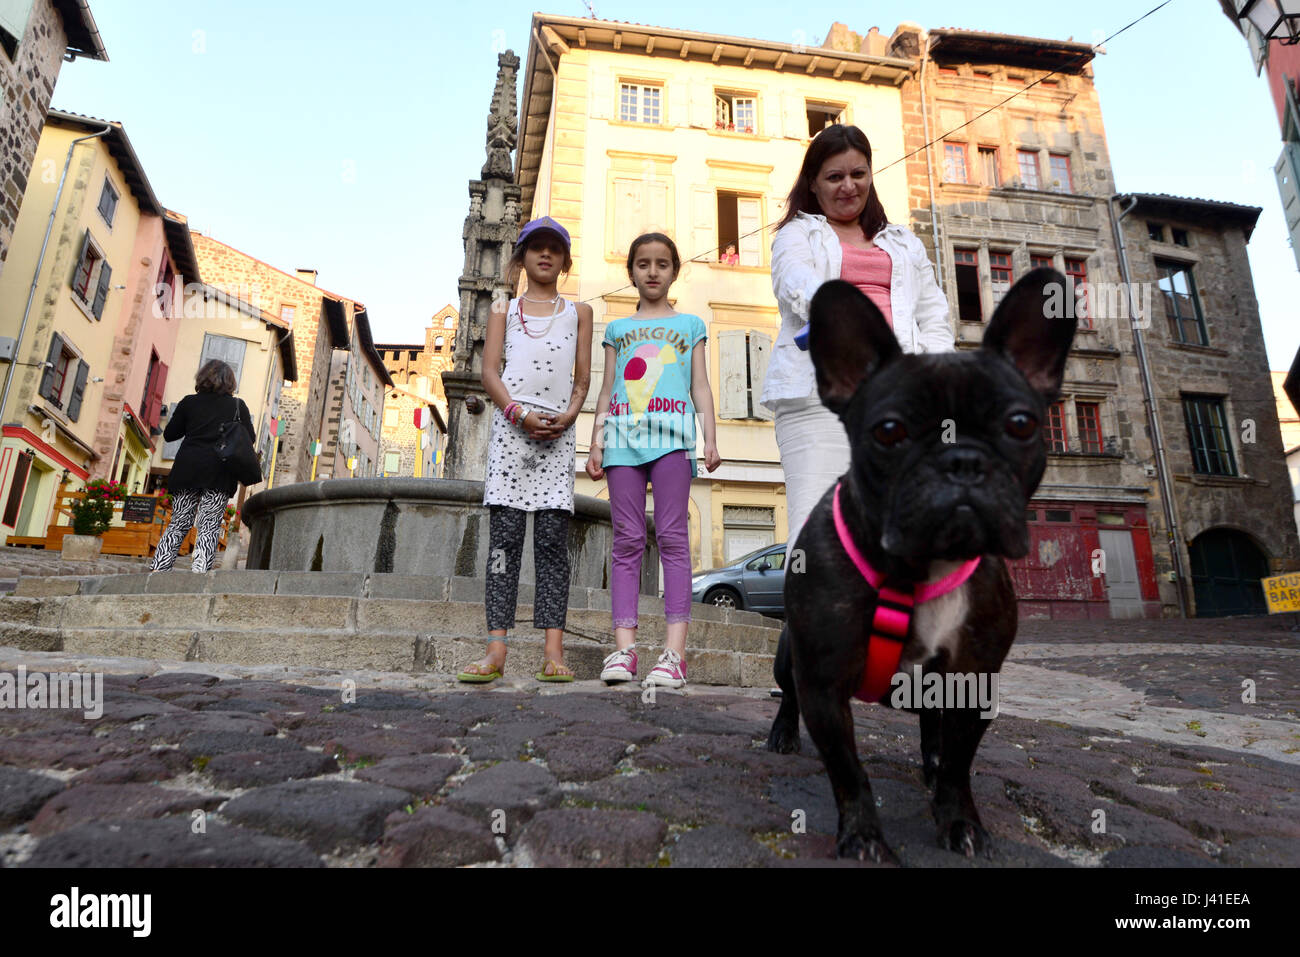 La promenade du chien de famille dans le Puy en Velay, Allier, Auvergne, France Banque D'Images